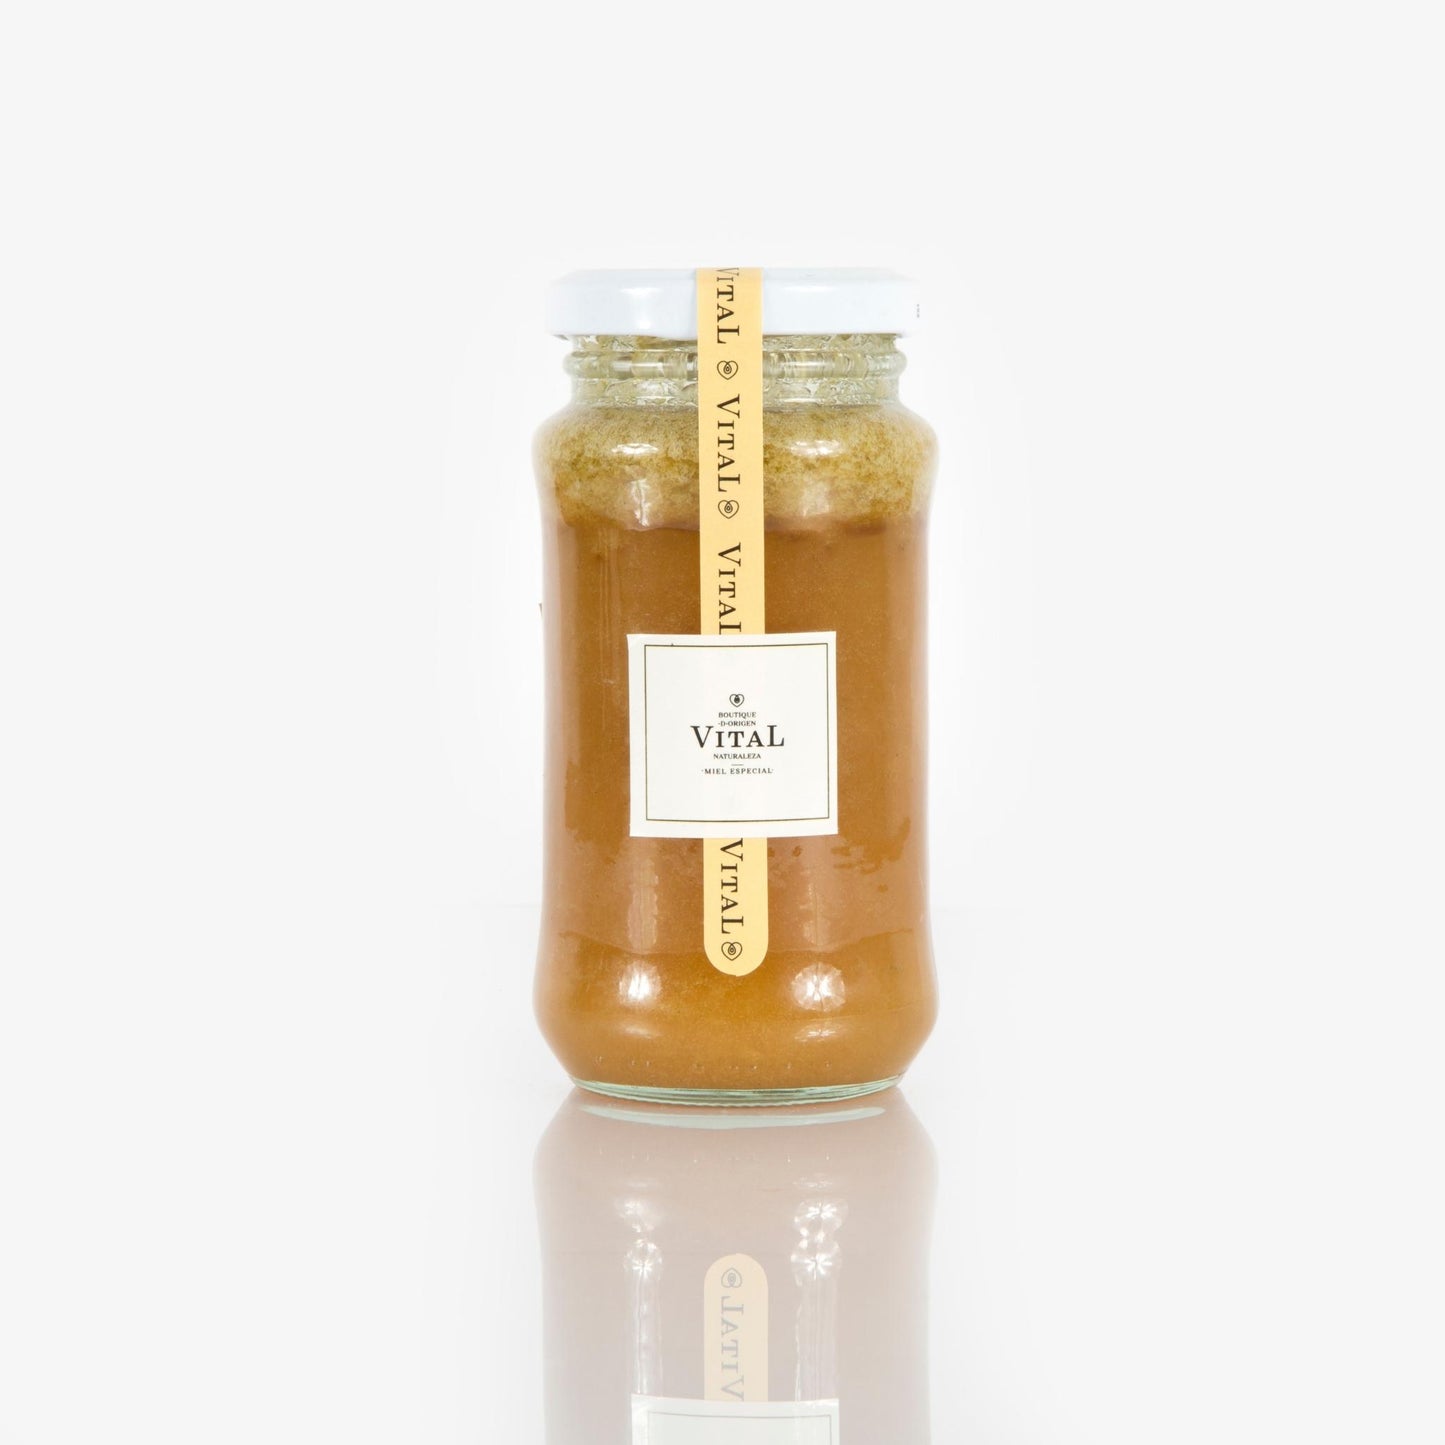 Miel especial de abejas infusionada con ralladura de cítricos 310 gr.